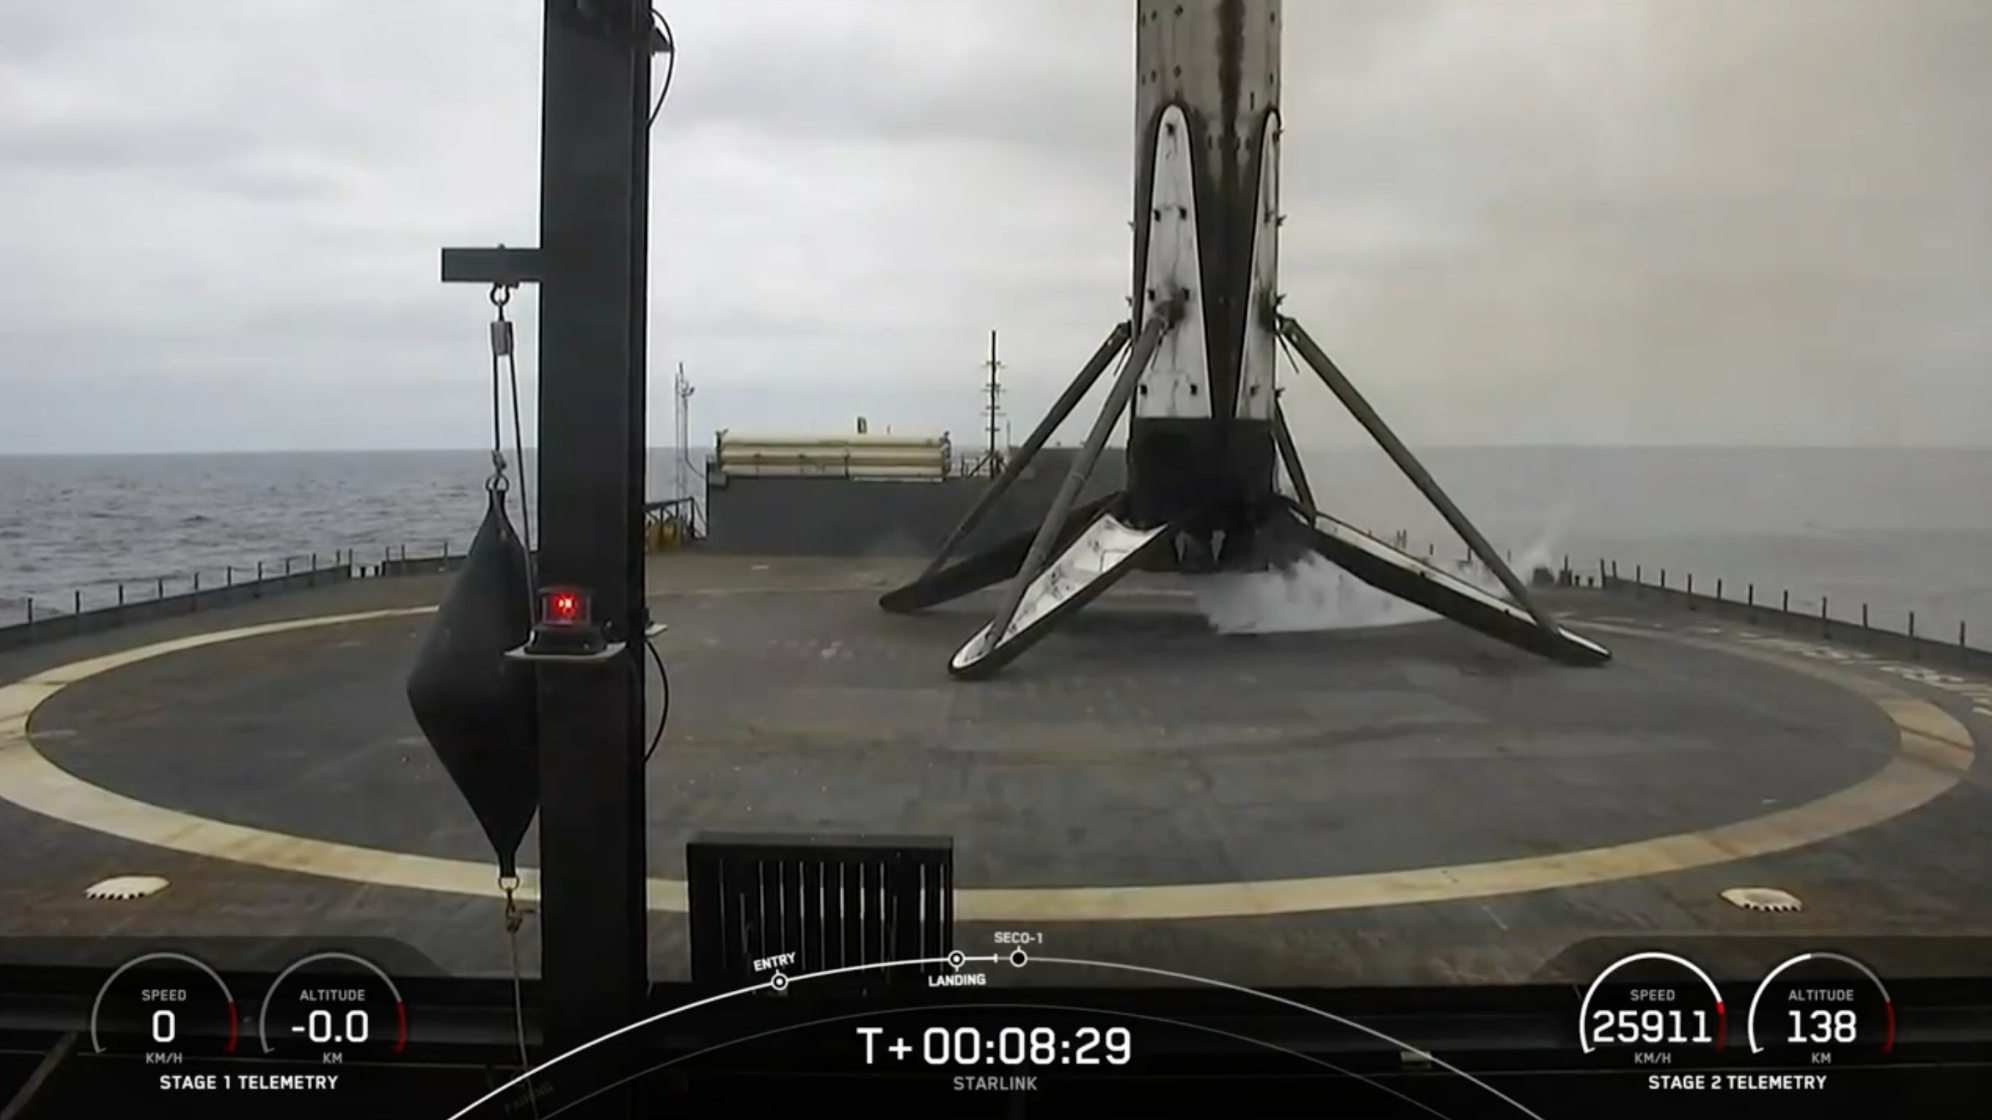 Pierwszy stopień czarno-białej rakiety SpaceX Falcon 9 znajduje się na pokładzie statku na morzu.